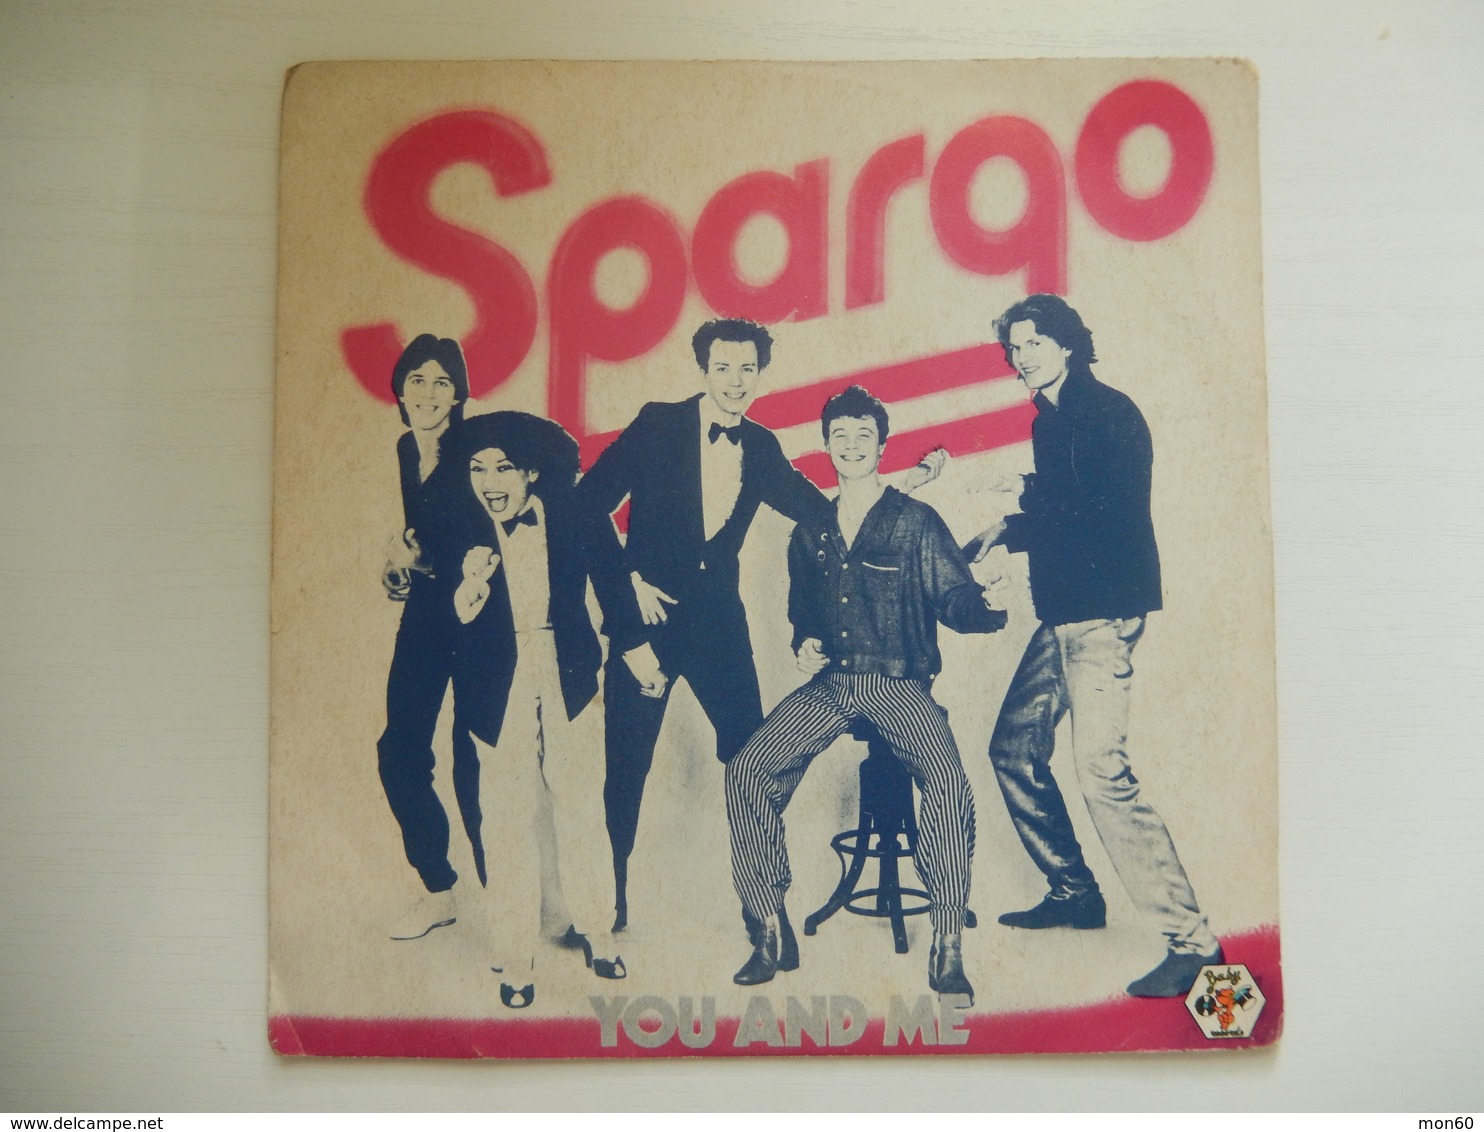 45 Giri - SPARGO, You And Me - Worry - 45 G - Maxi-Single